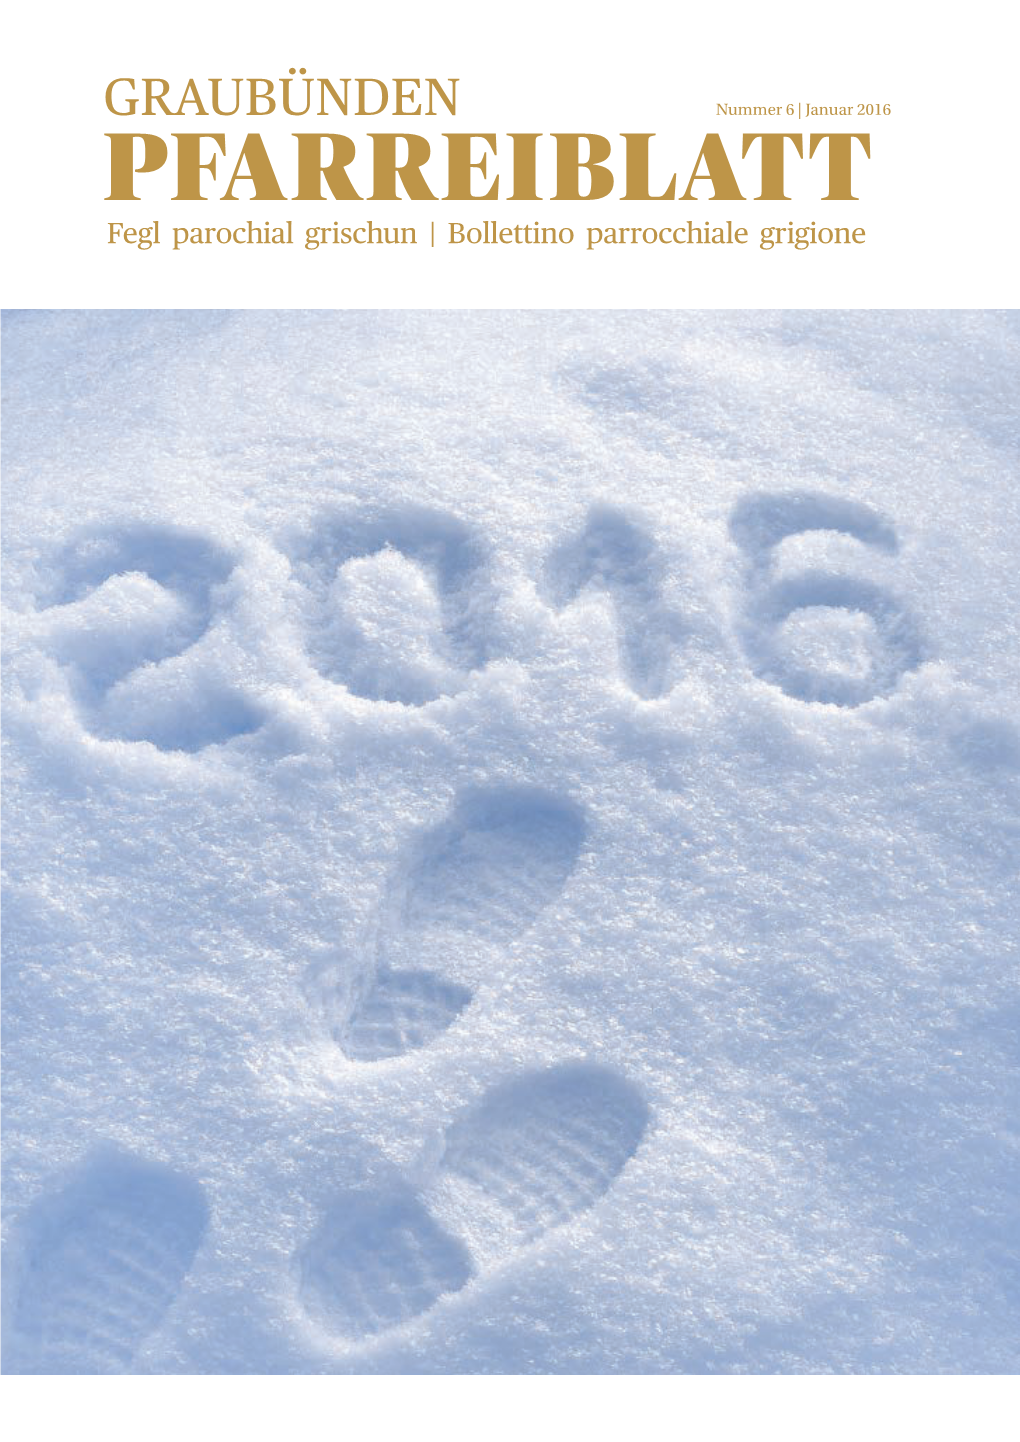 Graubünden Nummer 6 | Januar 2016 Pfarreiblatt Fegl Parochial Grischun | Bollettino Parrocchiale Grigione 2 Pfarreiblatt Graubünden | Januar 2016